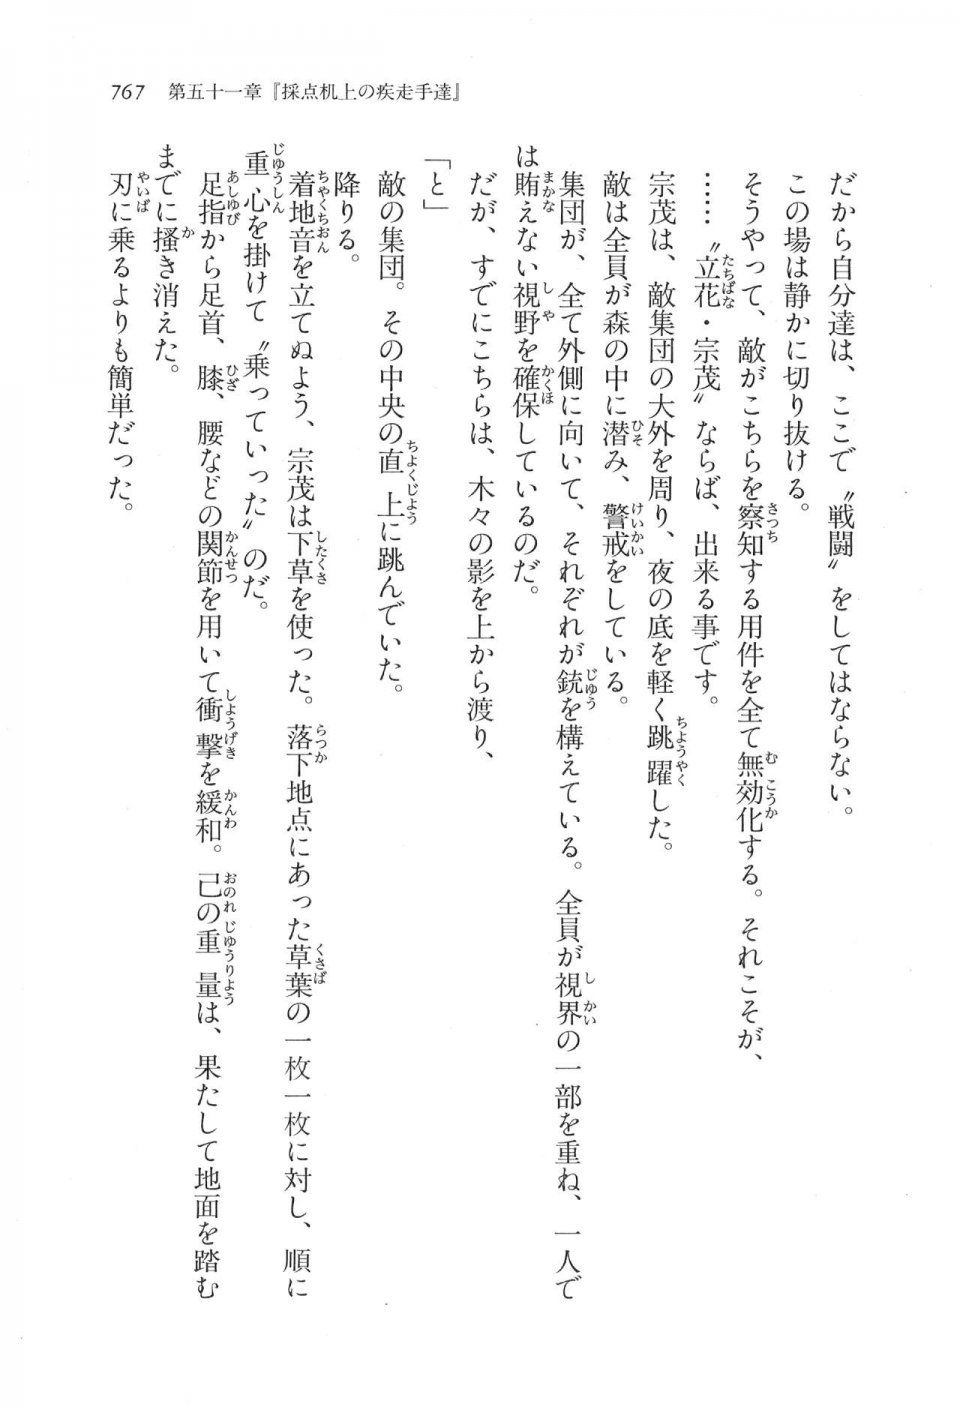 Kyoukai Senjou no Horizon LN Vol 17(7B) - Photo #769